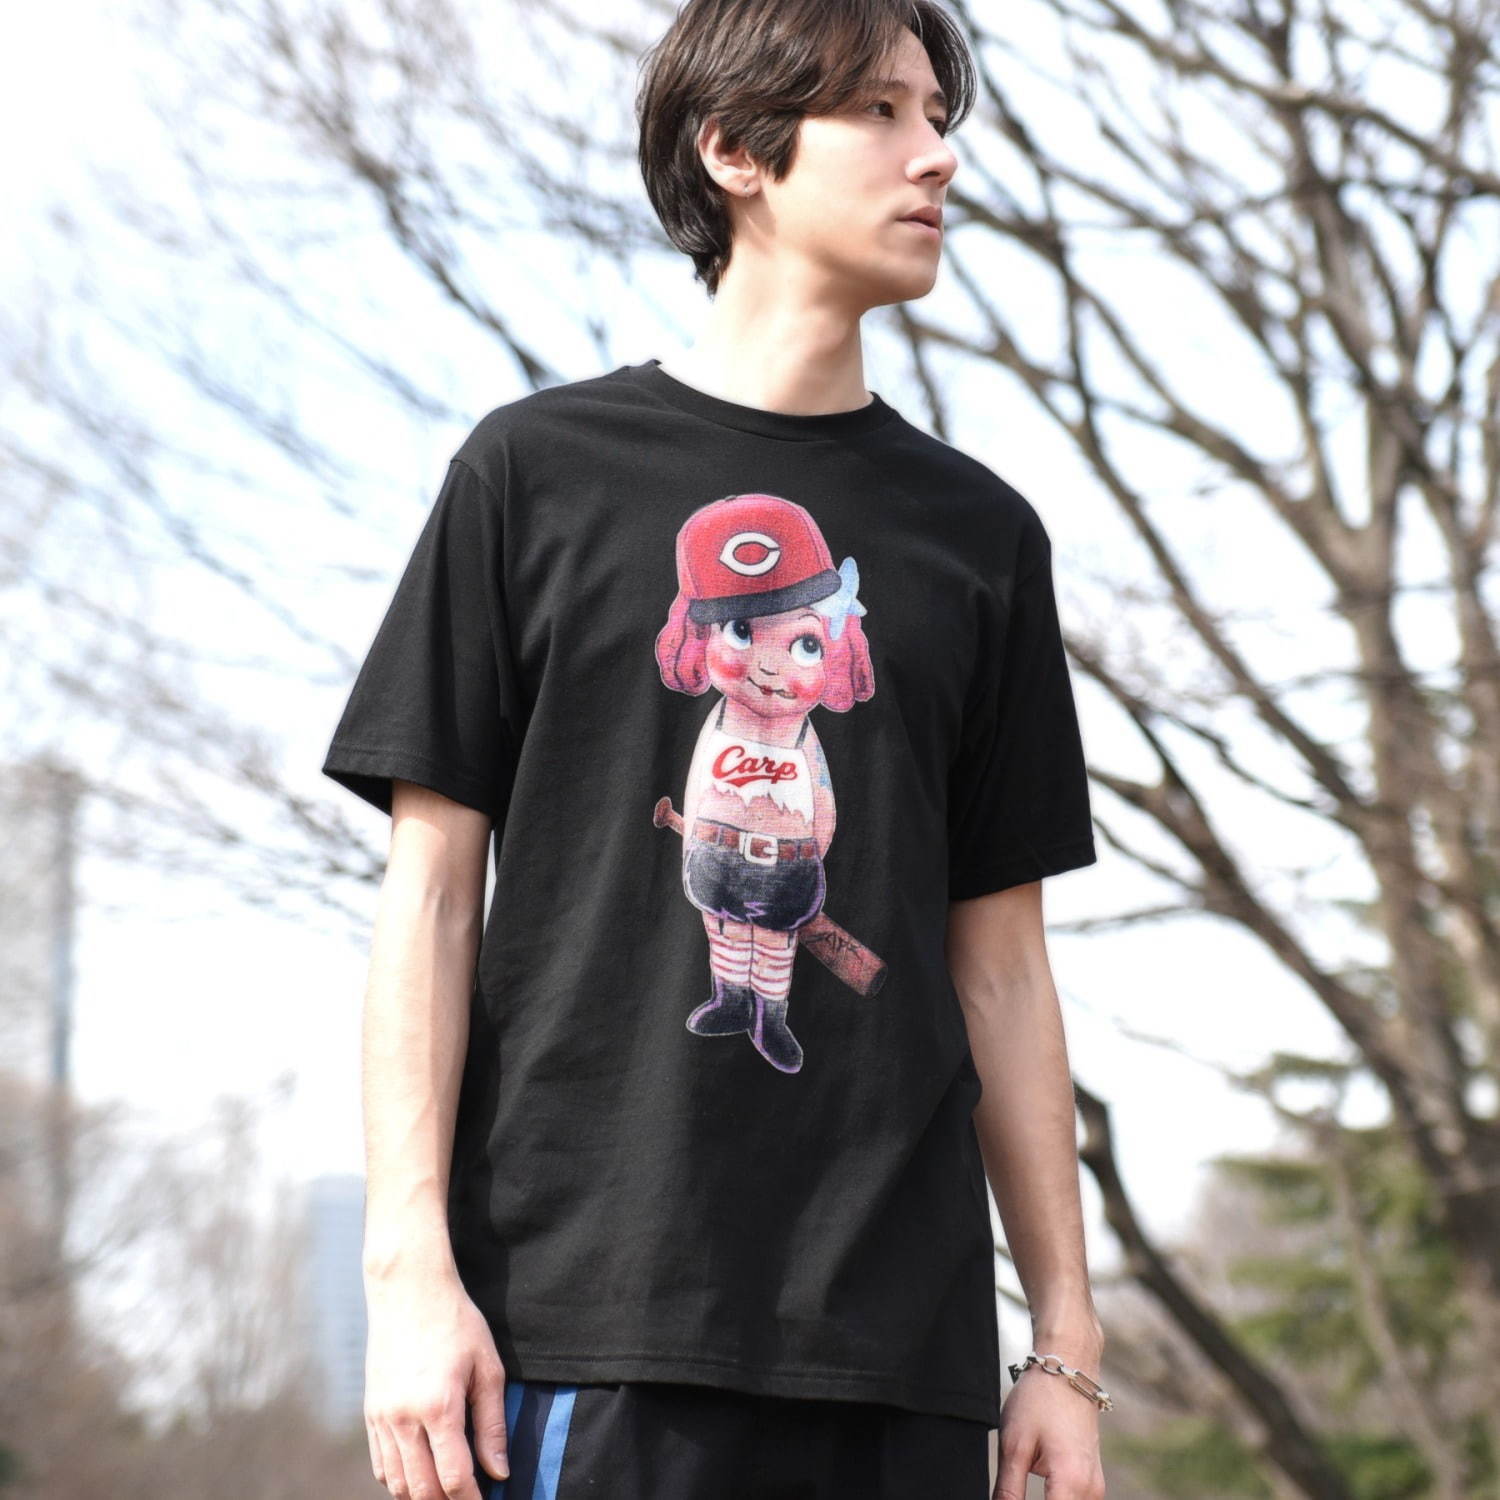 写真1 9 広島カープ ランド バイ ミルクボーイ カープ女子 グラフィックのtシャツ 真っ赤なくまバッグ ファッションプレス